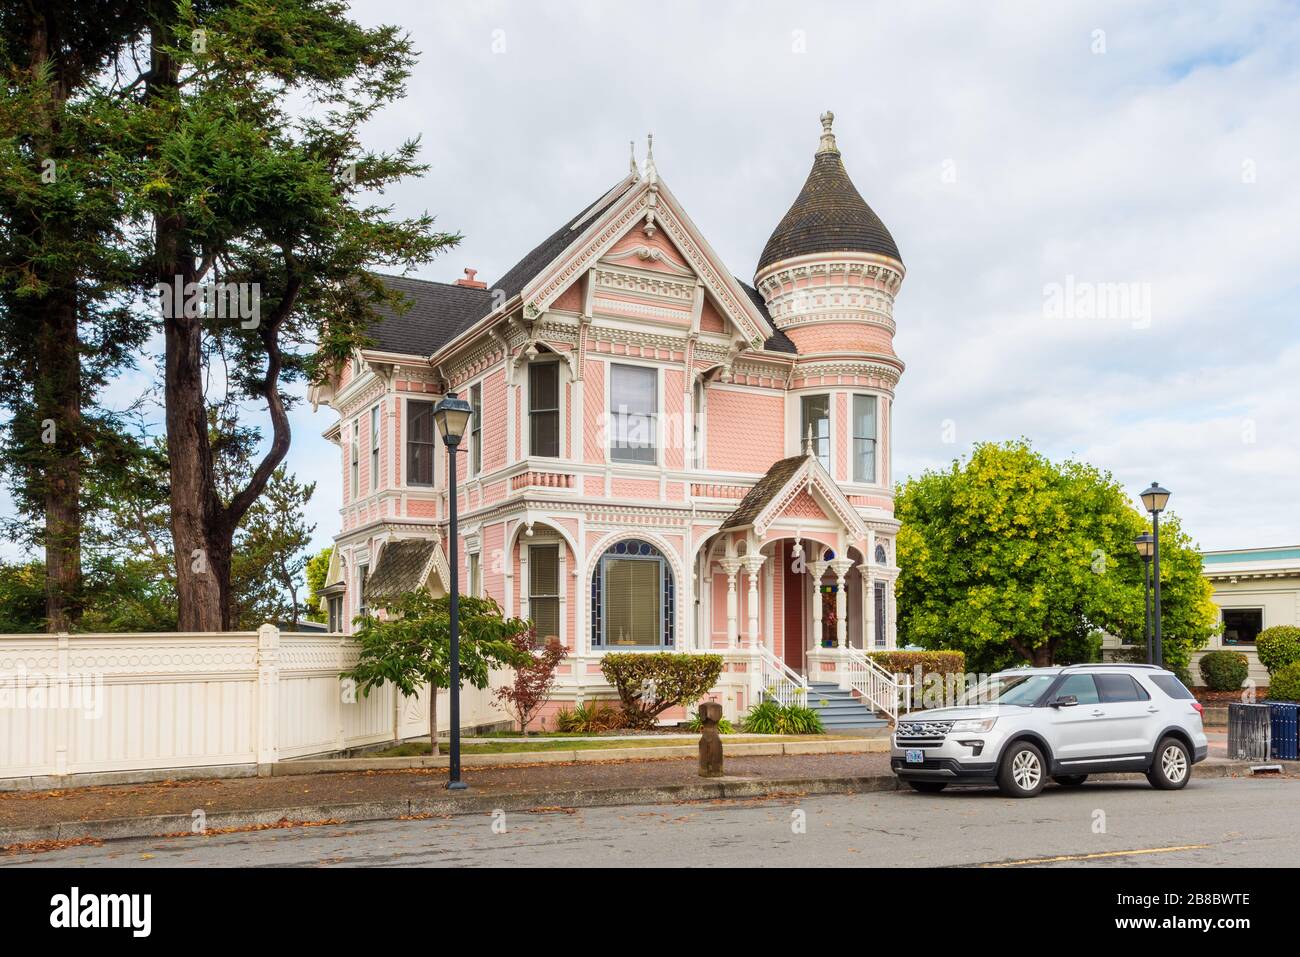 Maison victorienne de la fin du XIXe siècle appelée « Dame rose » à Eureka, Californie, États-Unis. C'est une maison de vacances aujourd'hui. Banque D'Images